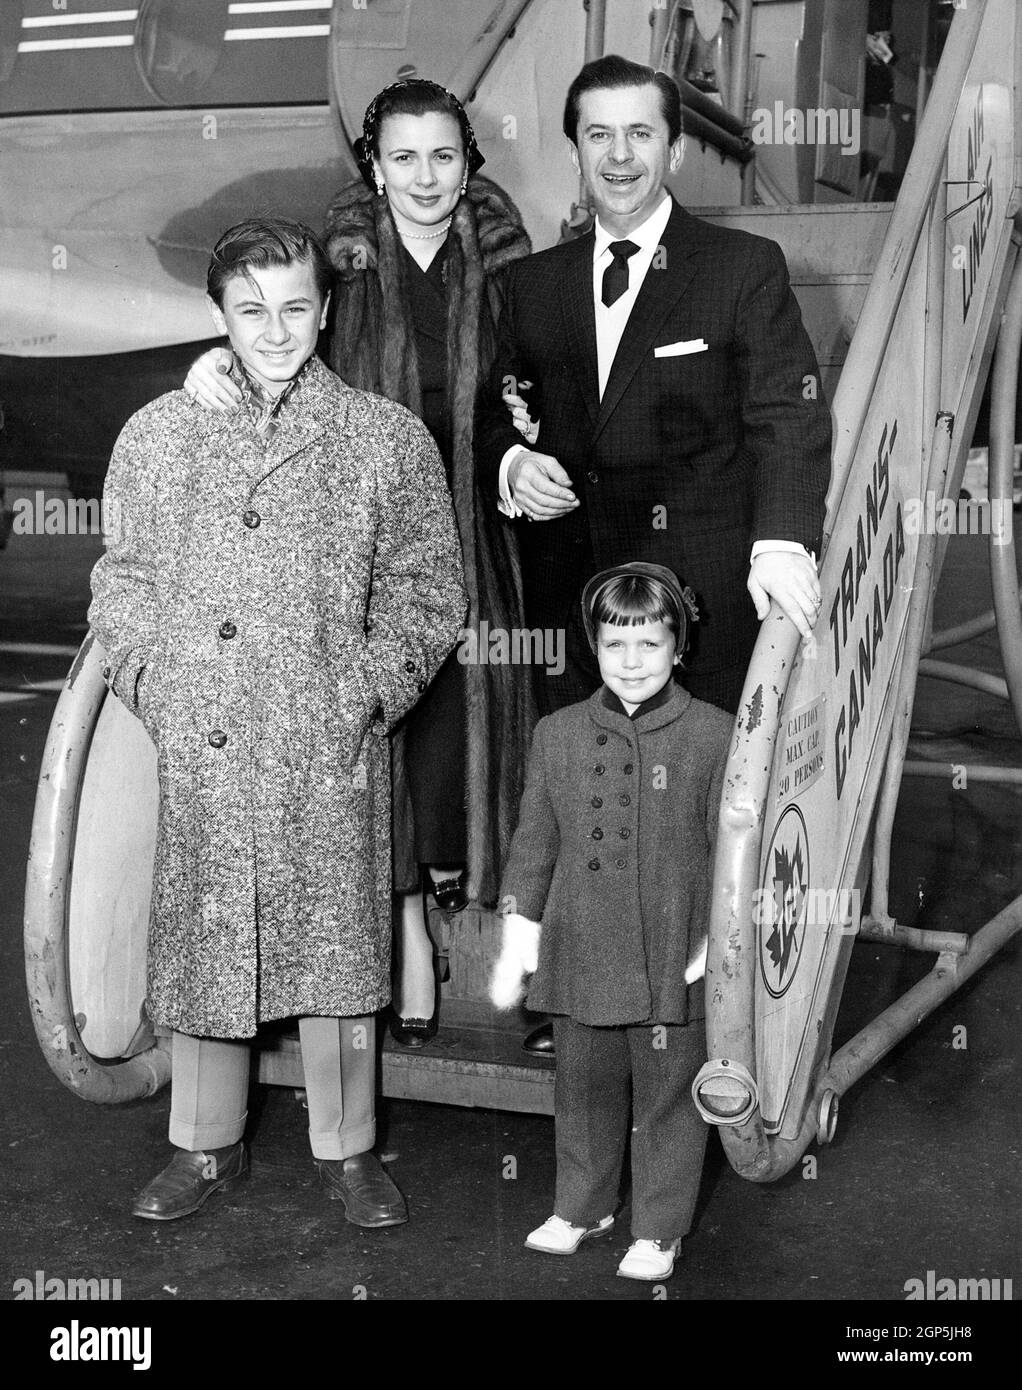 Morey Amsterdam (arriba a la derecha), su esposa Kay Patrick Amsterdam (arriba a la izquierda), su hijo Gregory Amsterdam (abajo a la izquierda) y su hija Cathy Amsterdam (abajo a la derecha), salen del Aeropuerto Internacional de Nueva York por Trans-Canada Air Lines, en dirección a Montreal, donde está haciendo una aparición personal, noviembre de 1955 Foto de stock